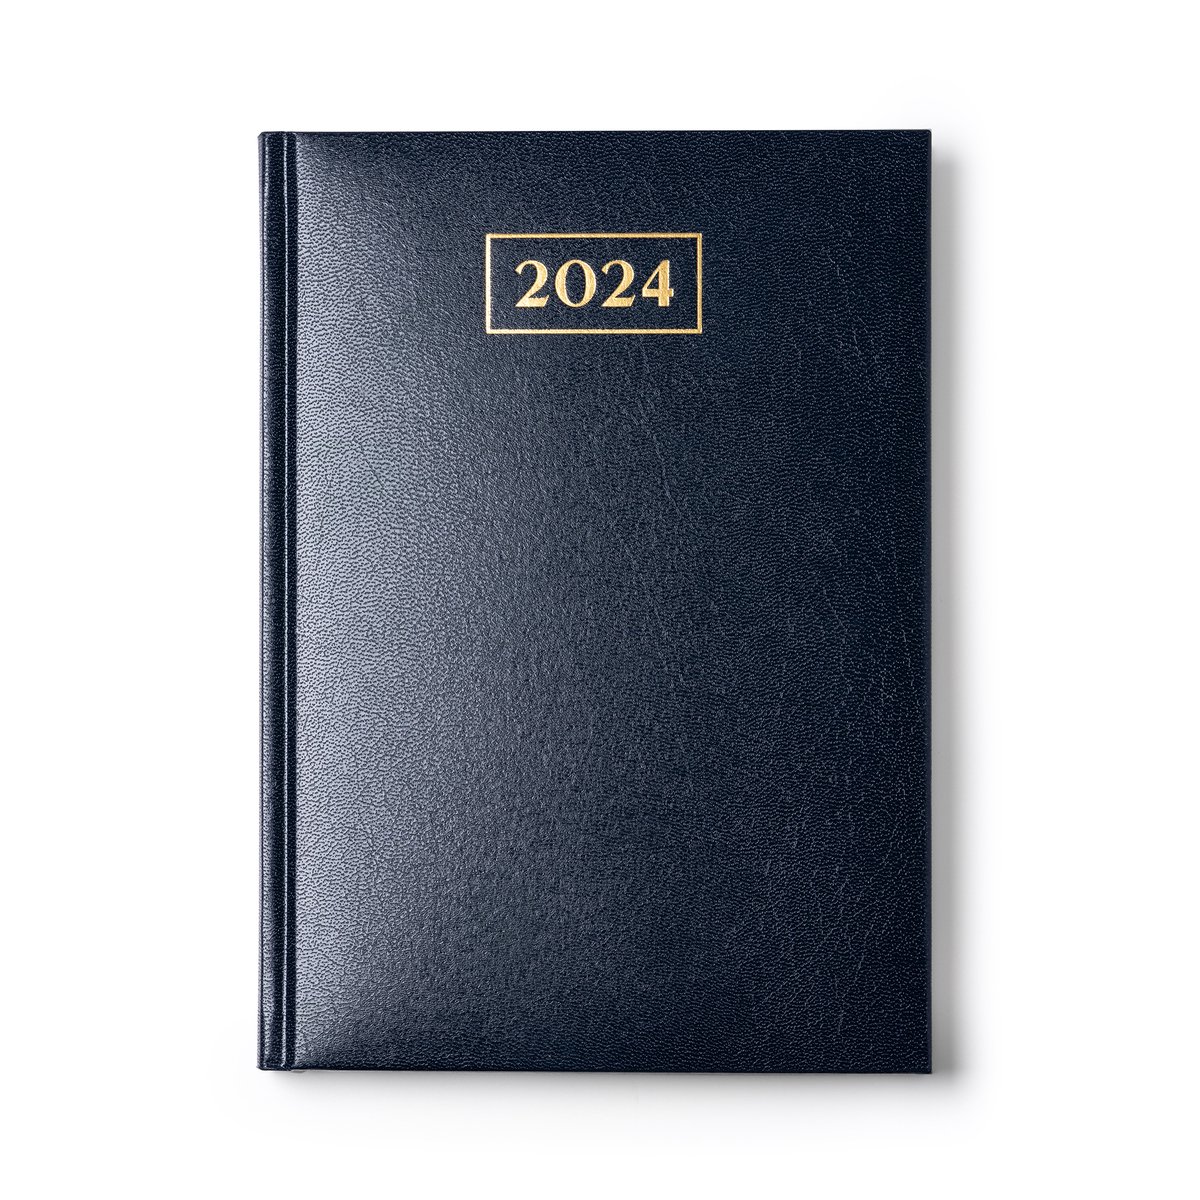 Agenda de Rendez-vous 2024 - Agenda Quotidien 1 Jour/Page - Hardcover A4 -  21x29cm 